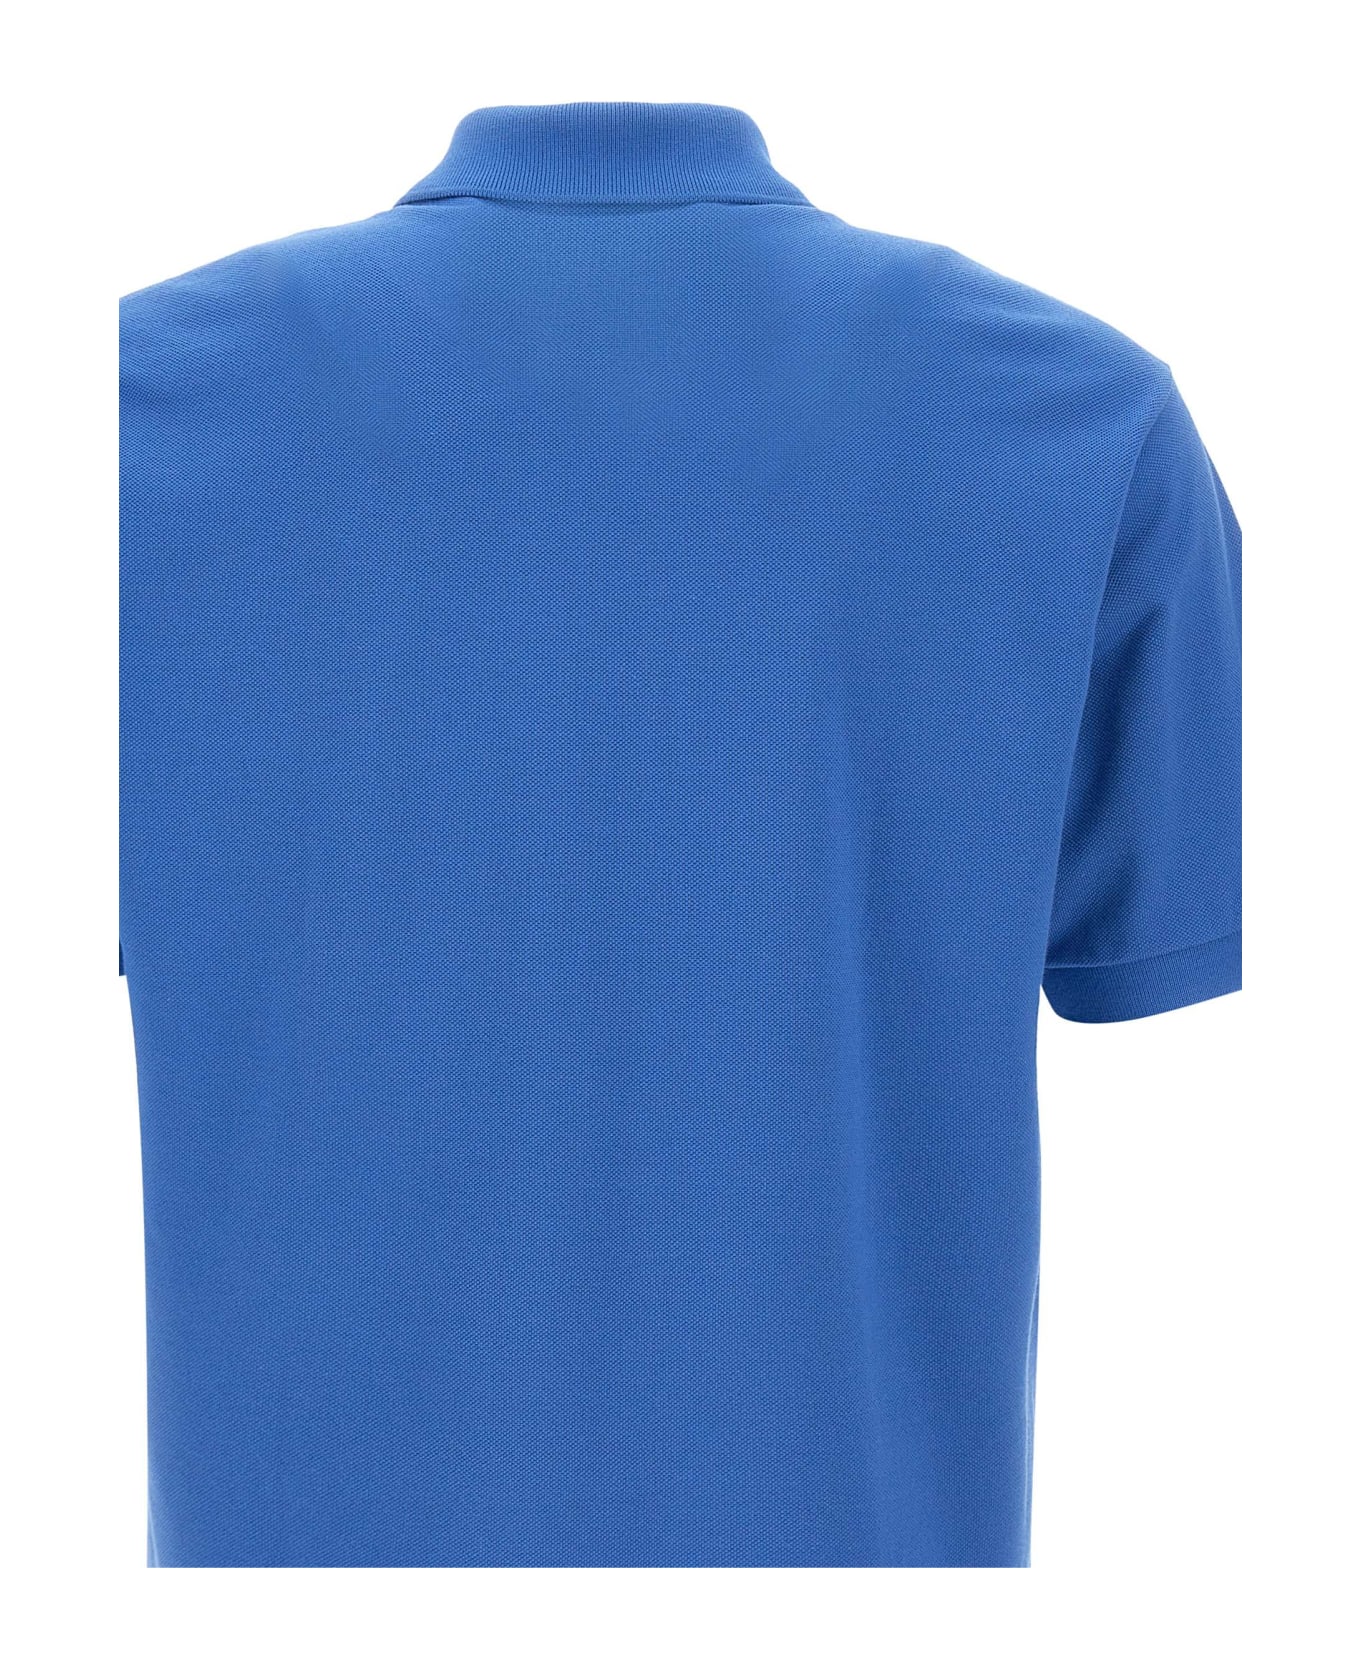 Lacoste Cotton Piquet Polo Shirt - Bluette